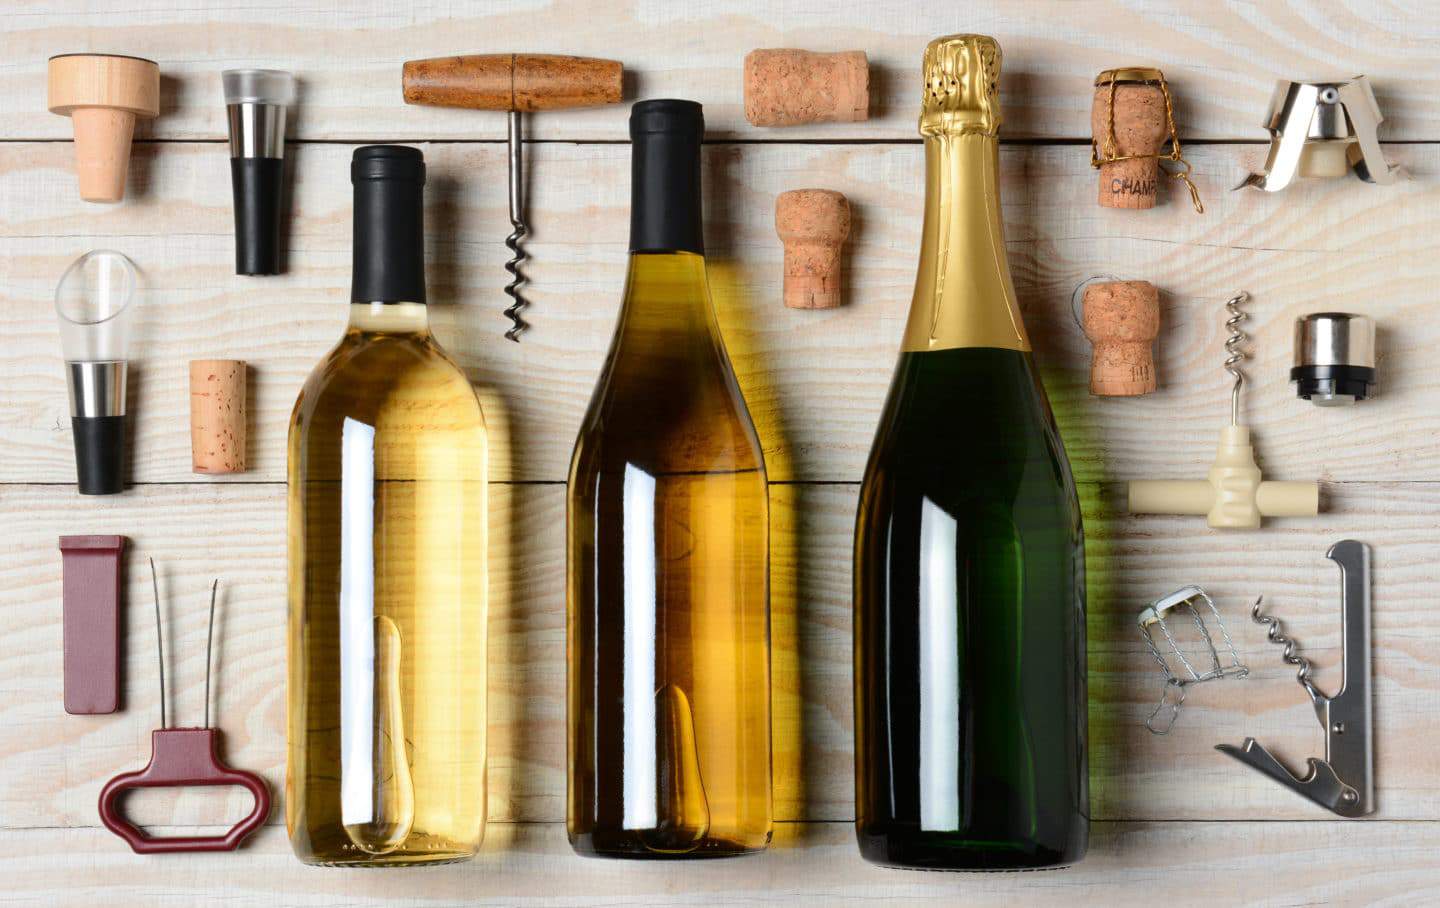 12 Best Gift Ideas for the Wine Lover | Social Studies